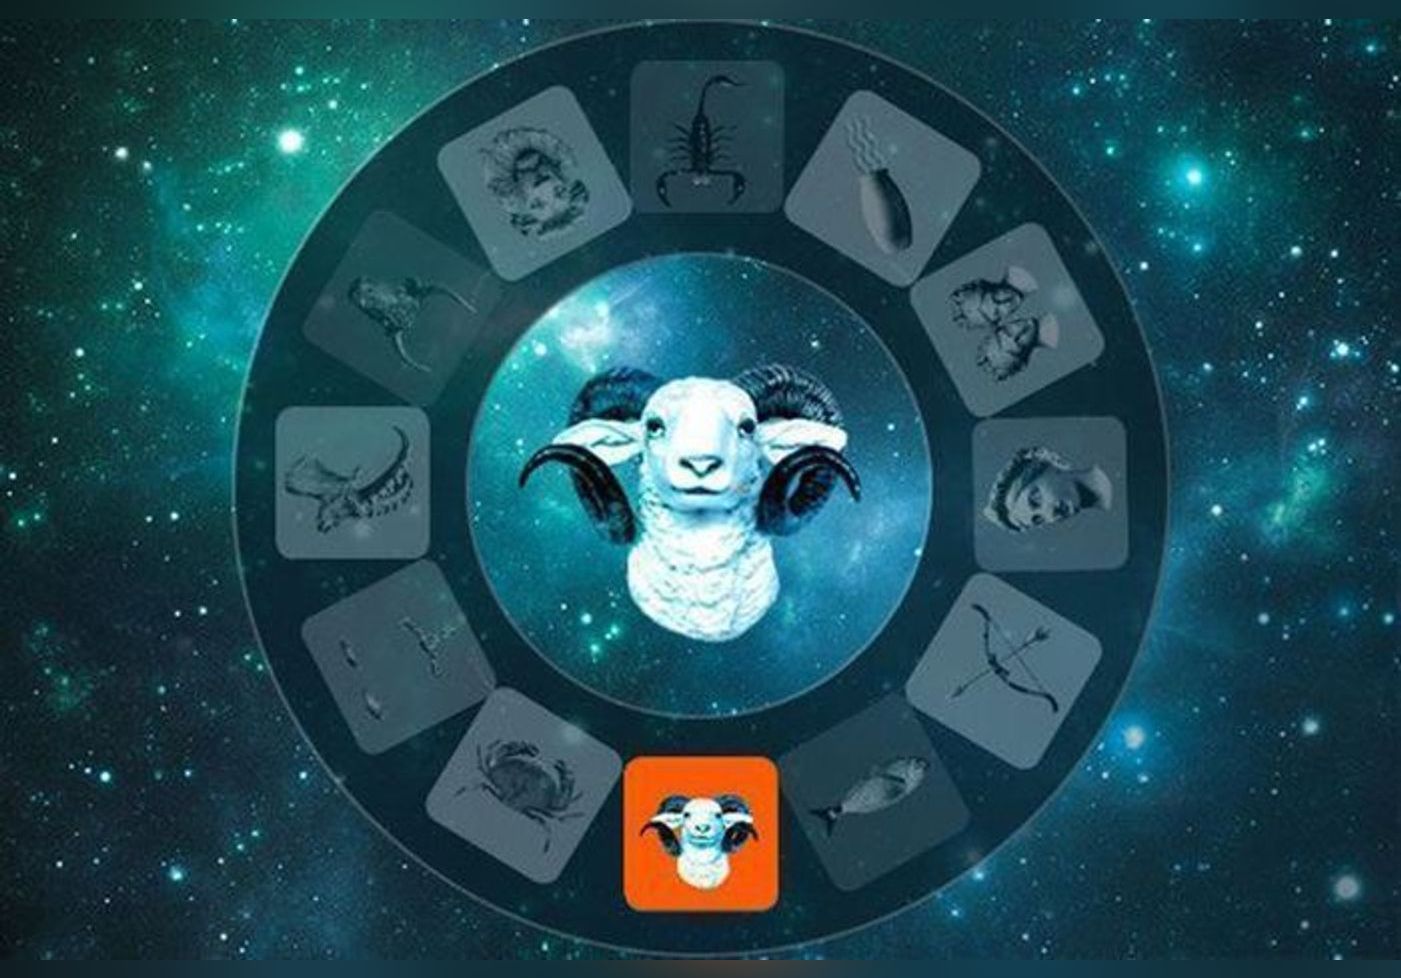 Votre horoscope de la semaine du 18 au 24 avril 2021